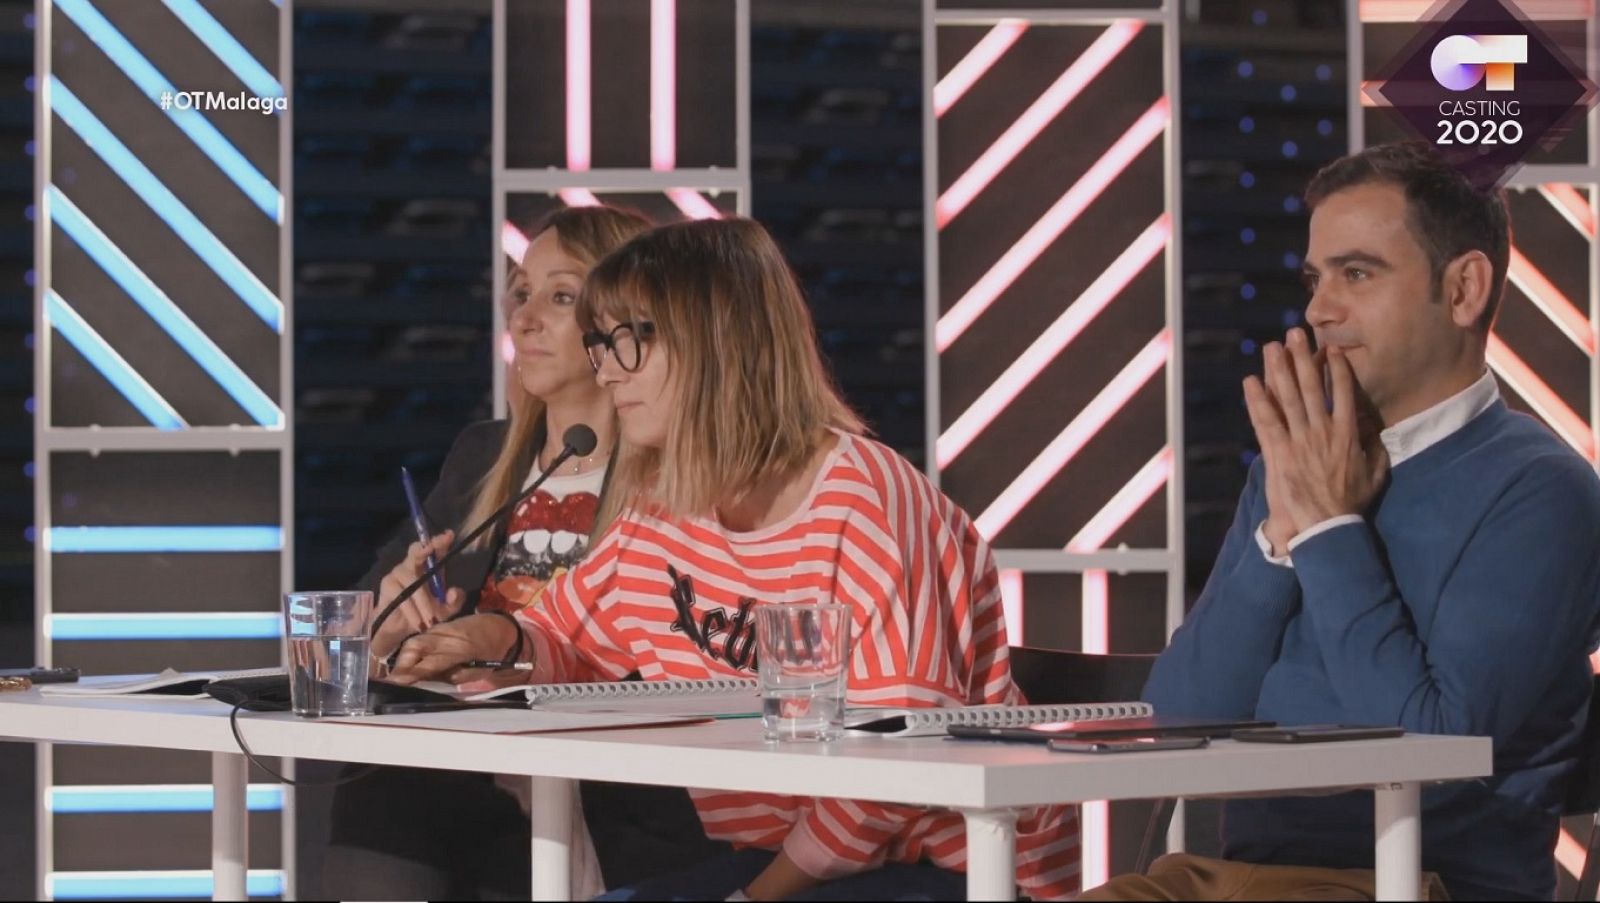 Video-consejo de Noemí para la vida del artista en la Fase 2 del casting OT 2020 en Málaga